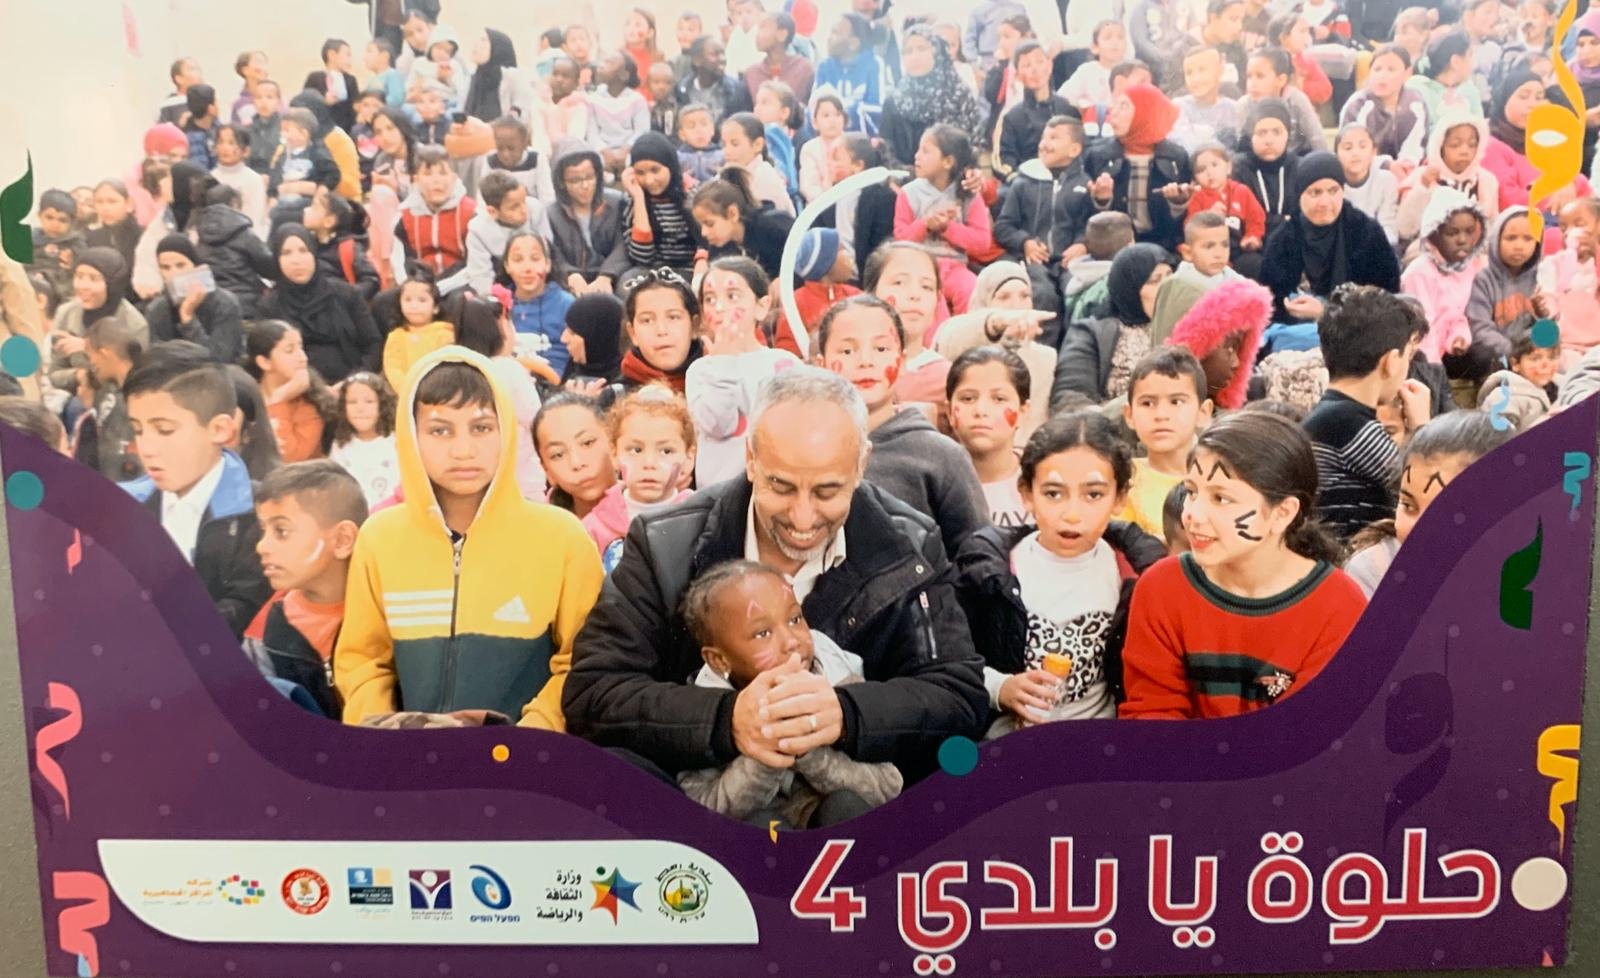 اختتام فعاليات مهرجان "حلوة يا بلدي 4" بمشاركة الالاف في المركز الجماهيري رهط-10